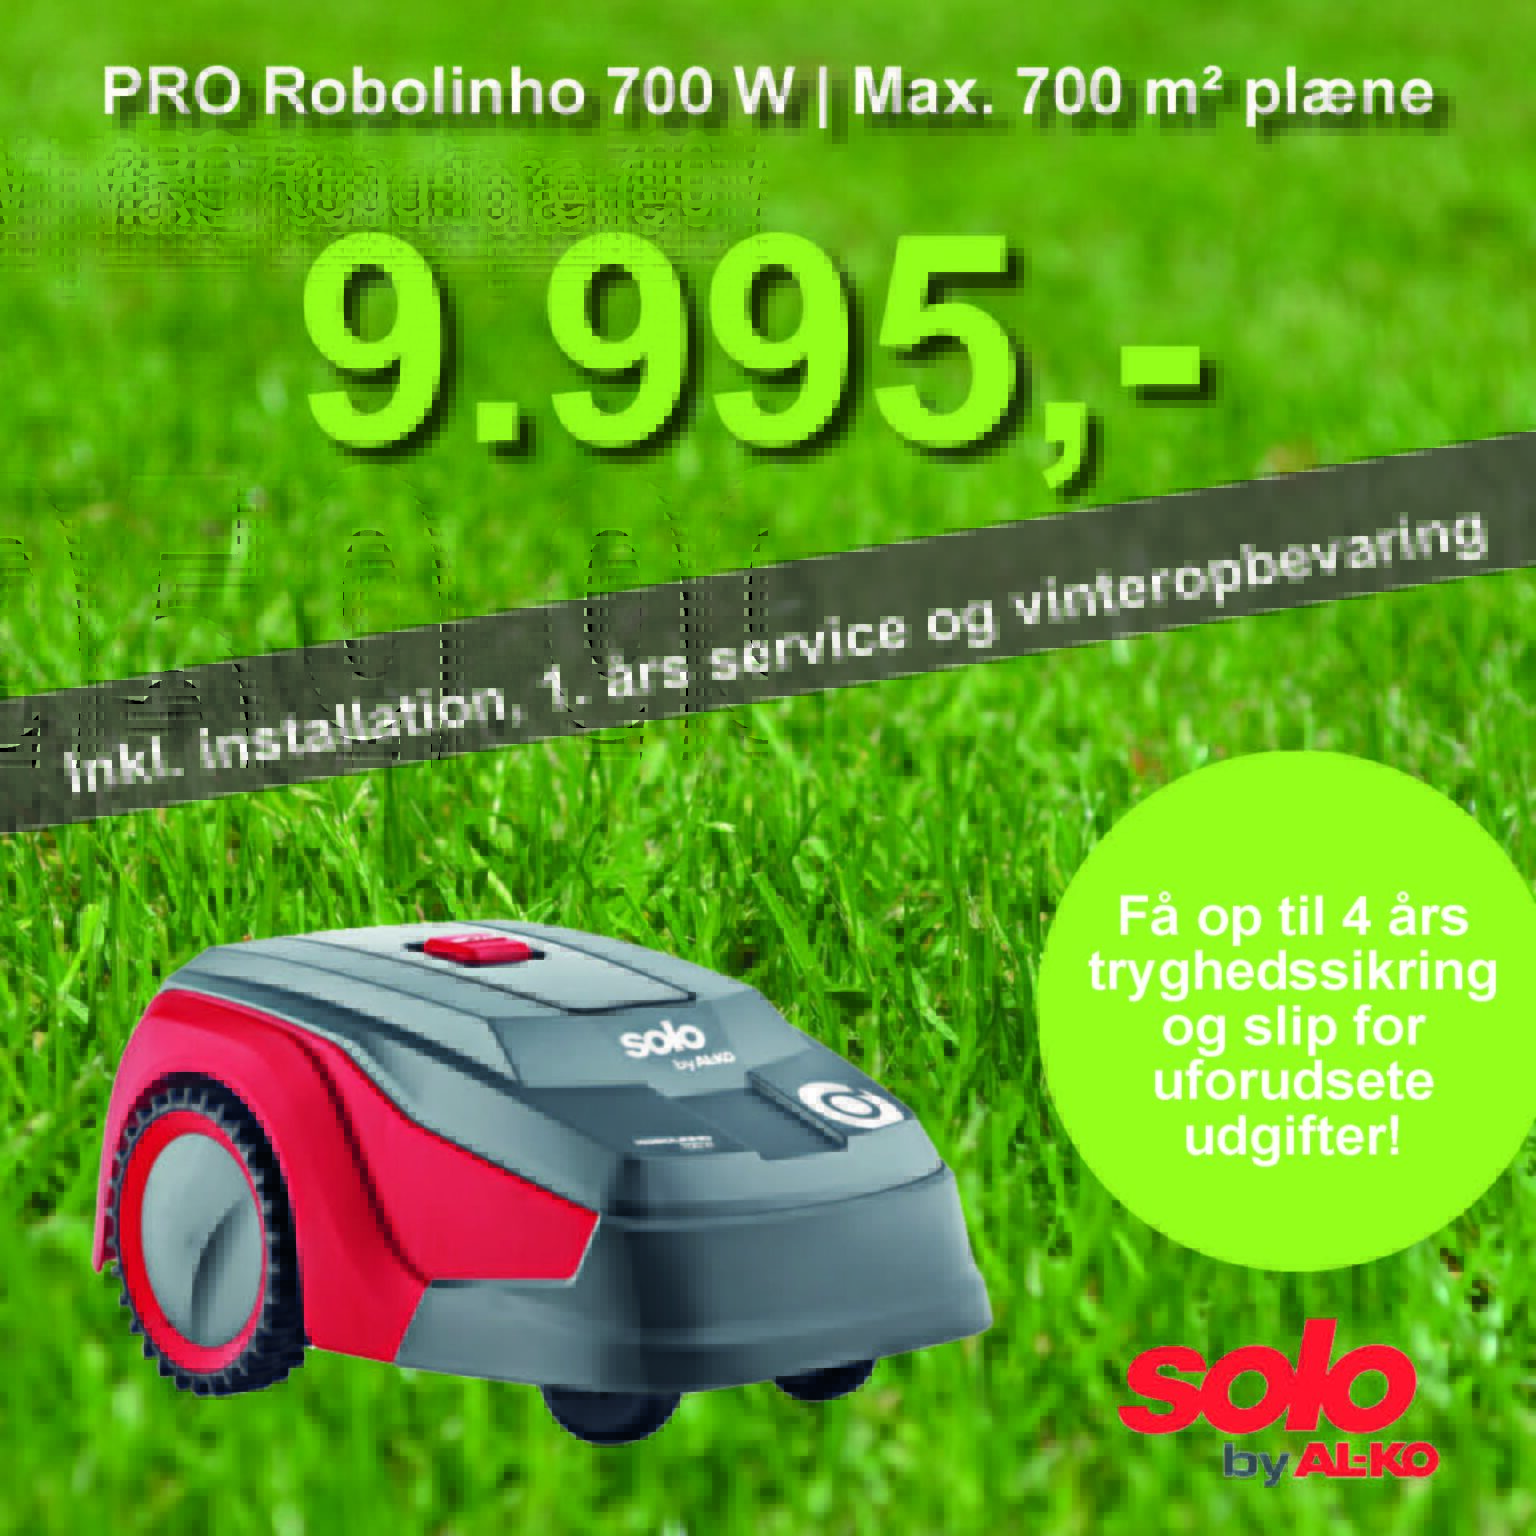 Solo robotplæneklipper premium PRO Robolinho 700 W - 700m2 inkl. installation, 1. års service og vinteropbevaring.